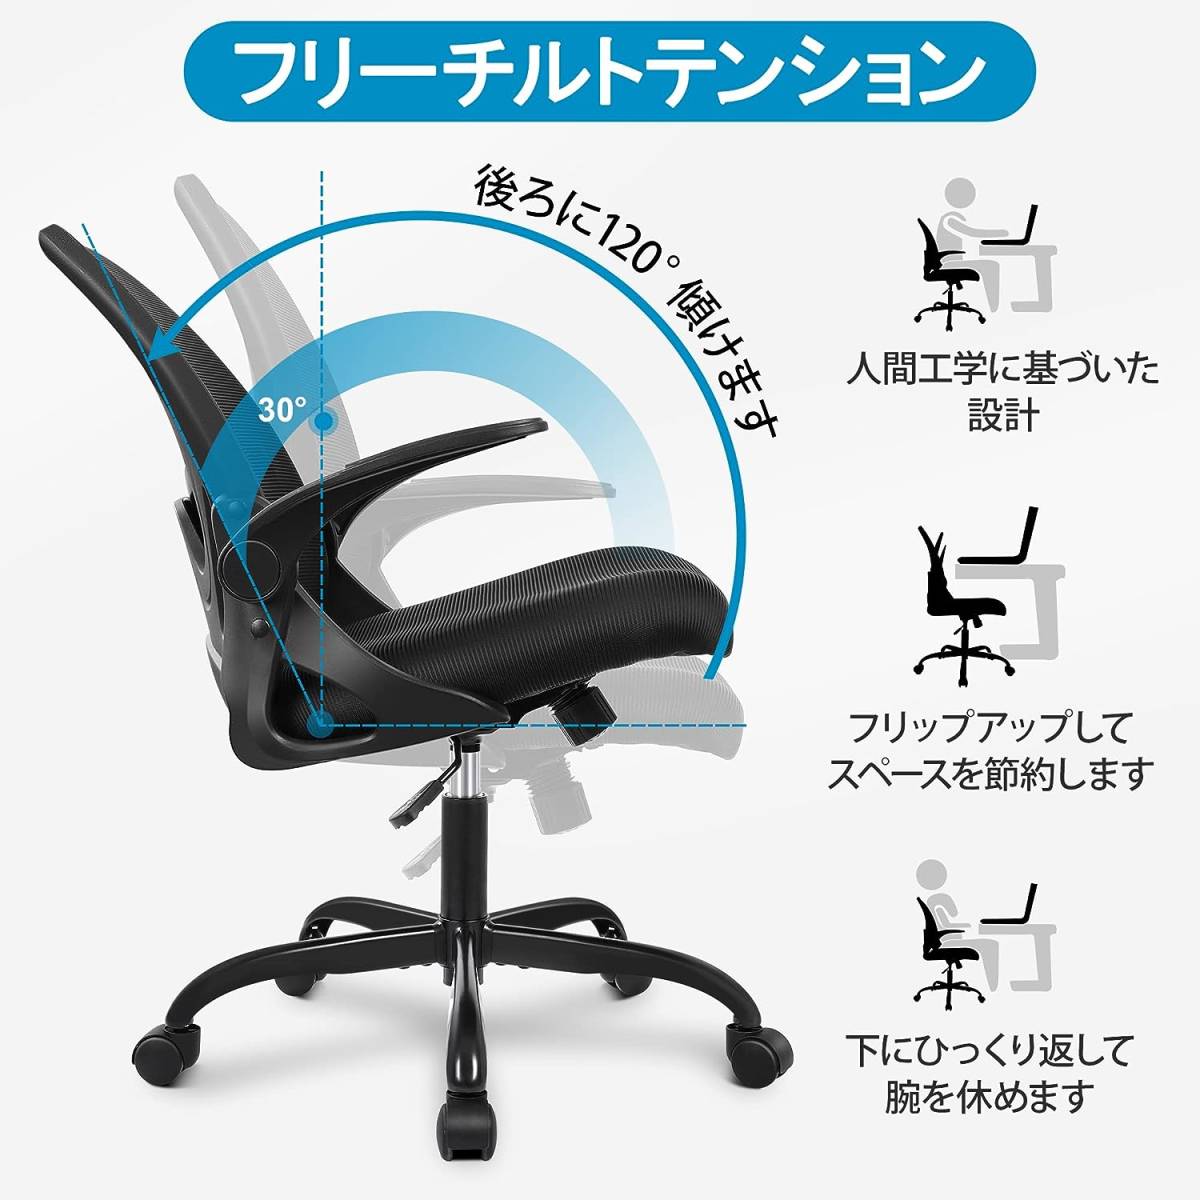 ちPR934ブラック Primy デスクチェア オフィスチェア 人間工学椅子 跳ね上げ式アームレスト 通気性メッシュ ロッキング機能